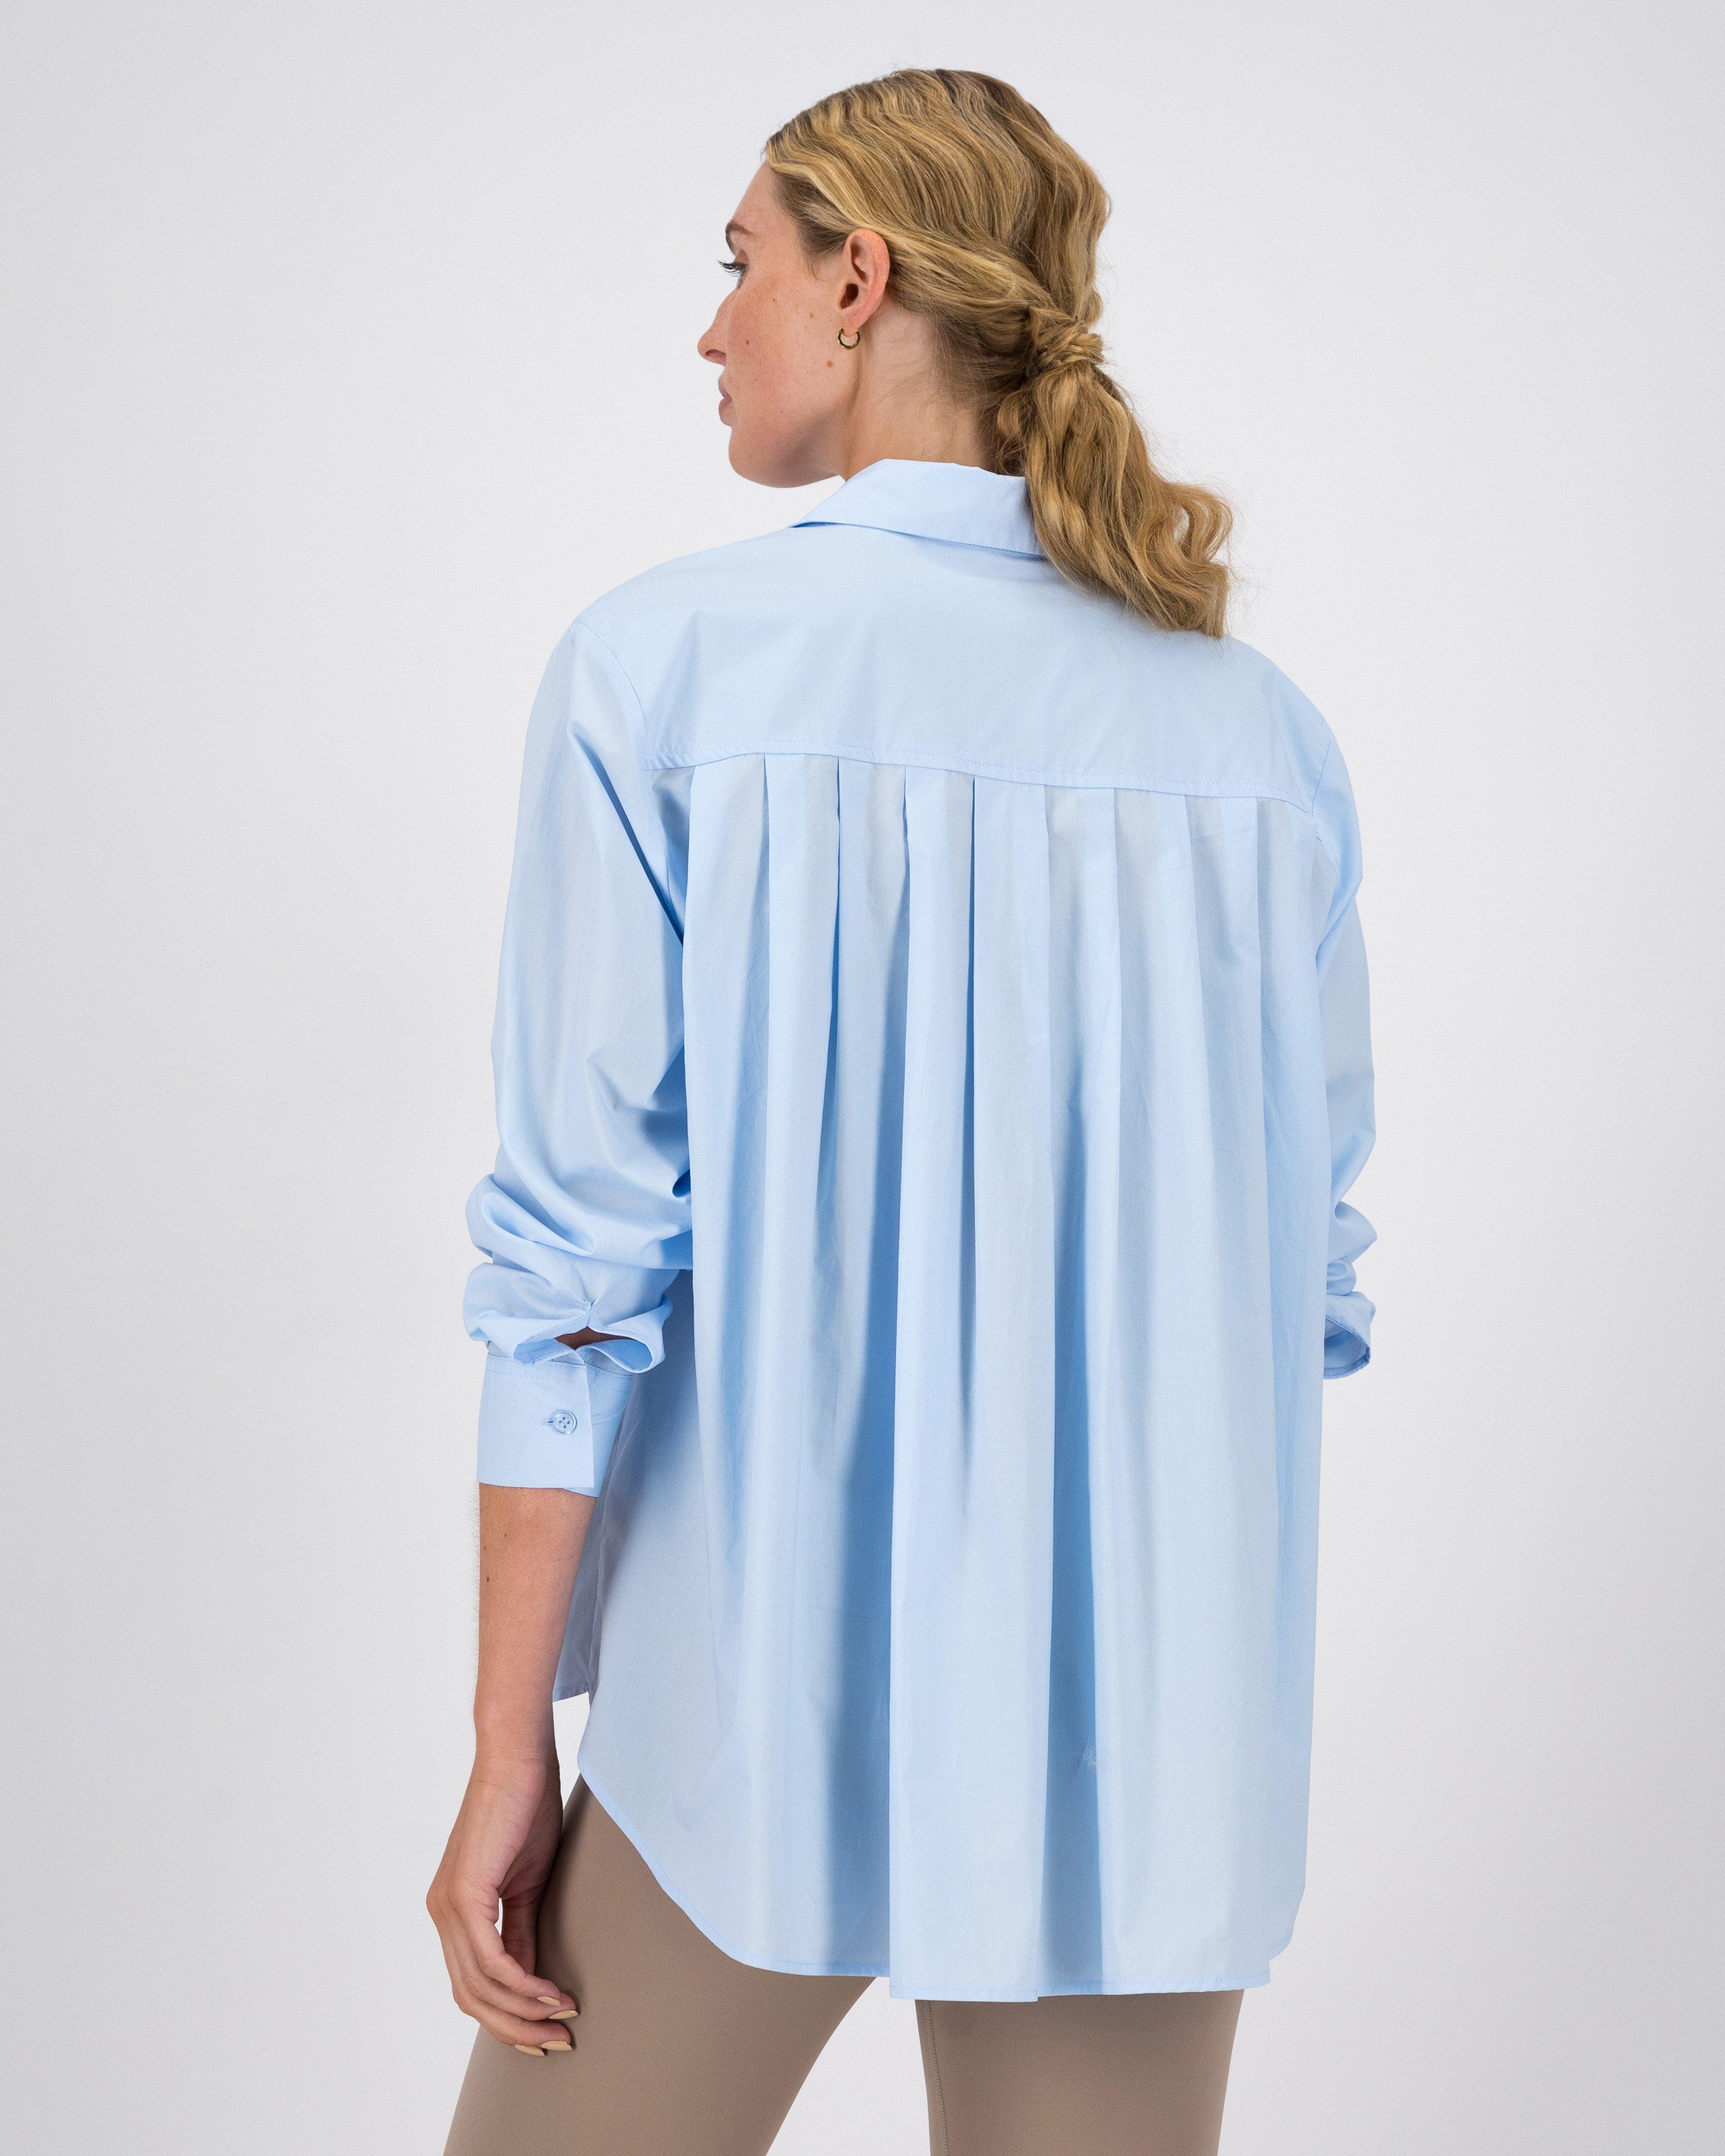 Abelina Oversized Poplin Shirt -  Light Blue